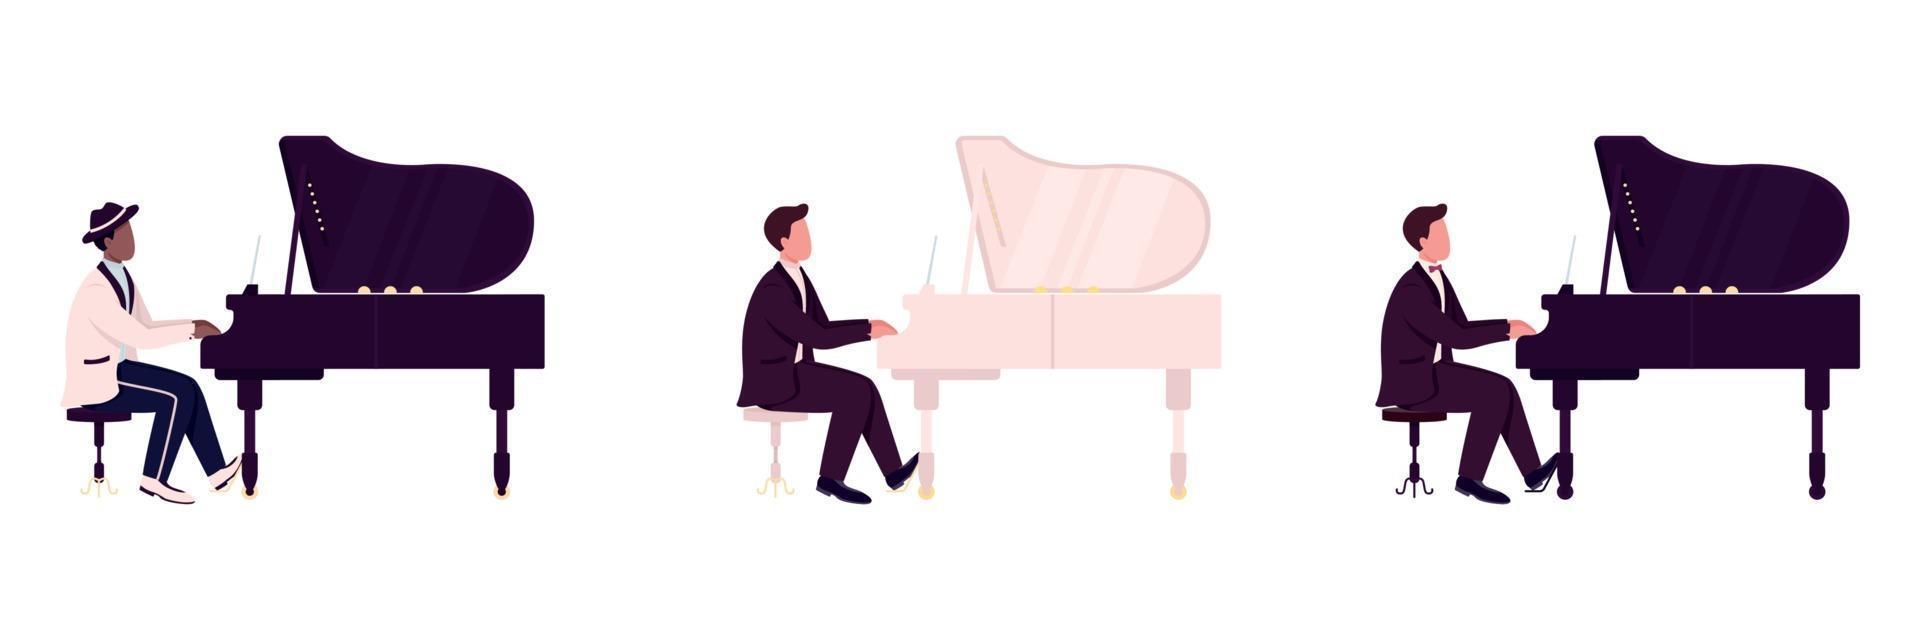 diversos pianistas vector de color plano conjunto de caracteres sin rostro